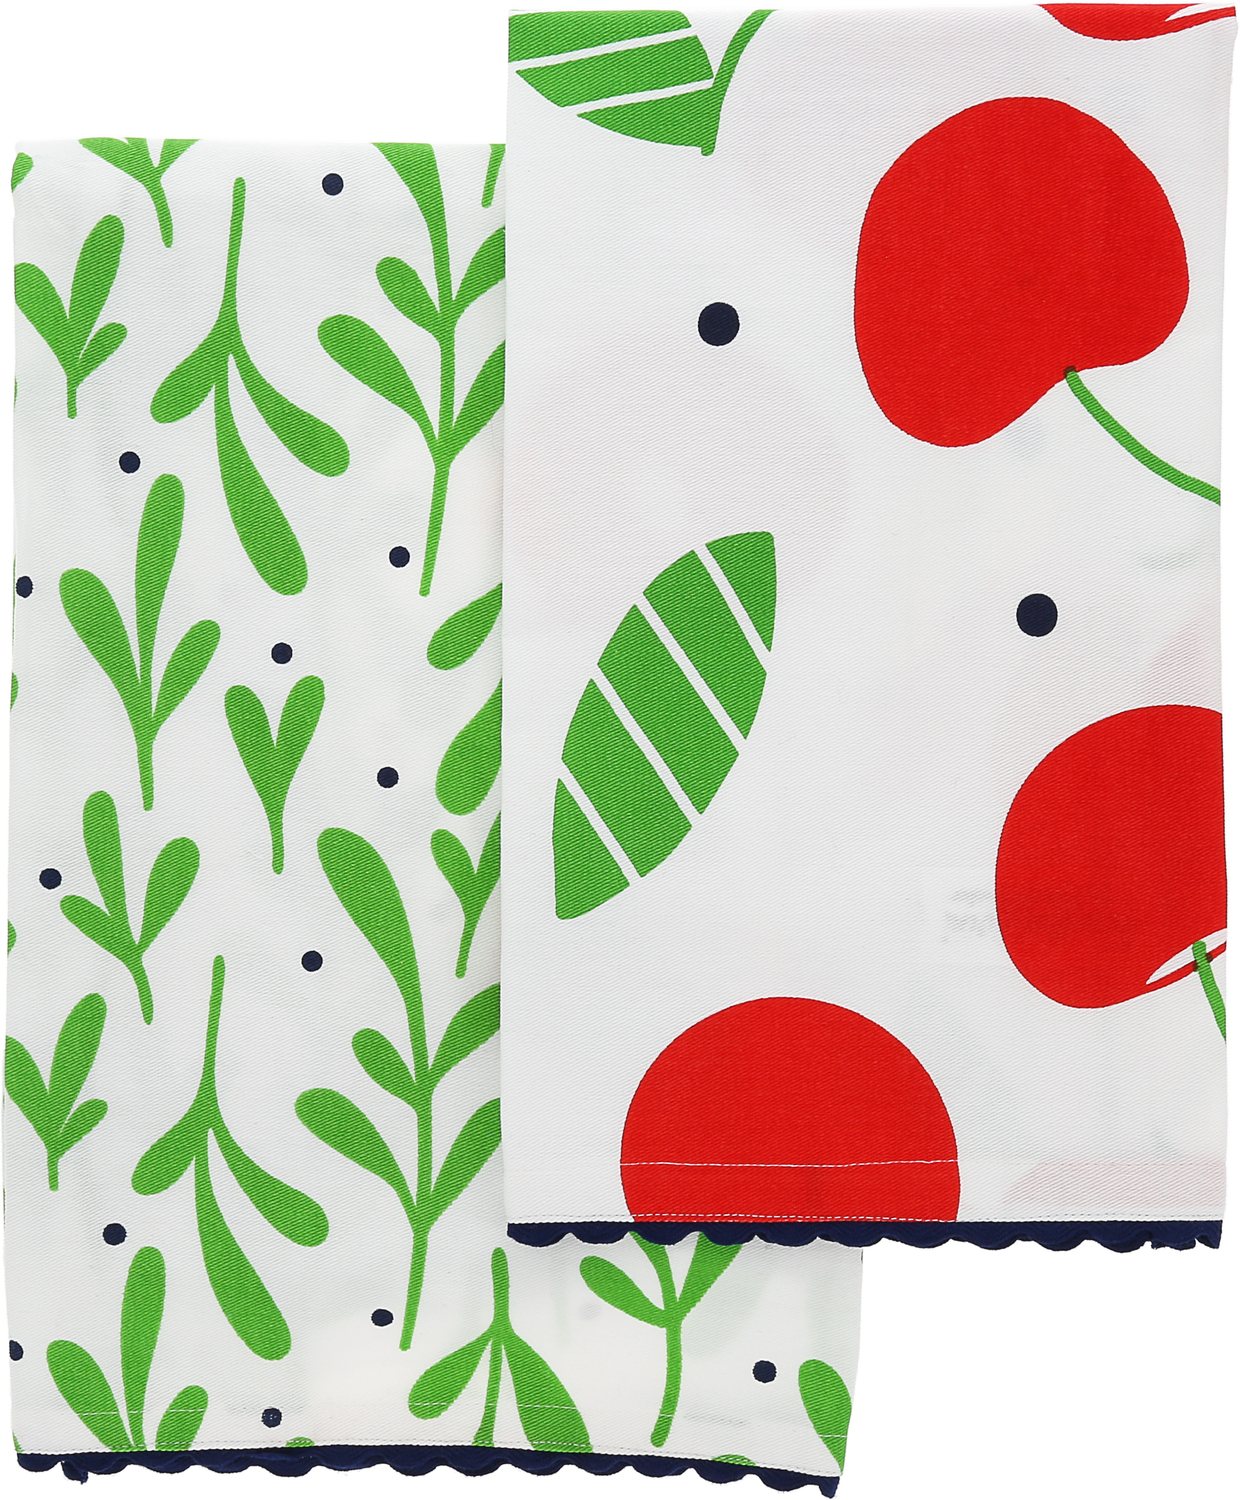 Cherries by Fruitful Livin' - Cherries - Tea Towel Gift Set (2 - 20" x 28")